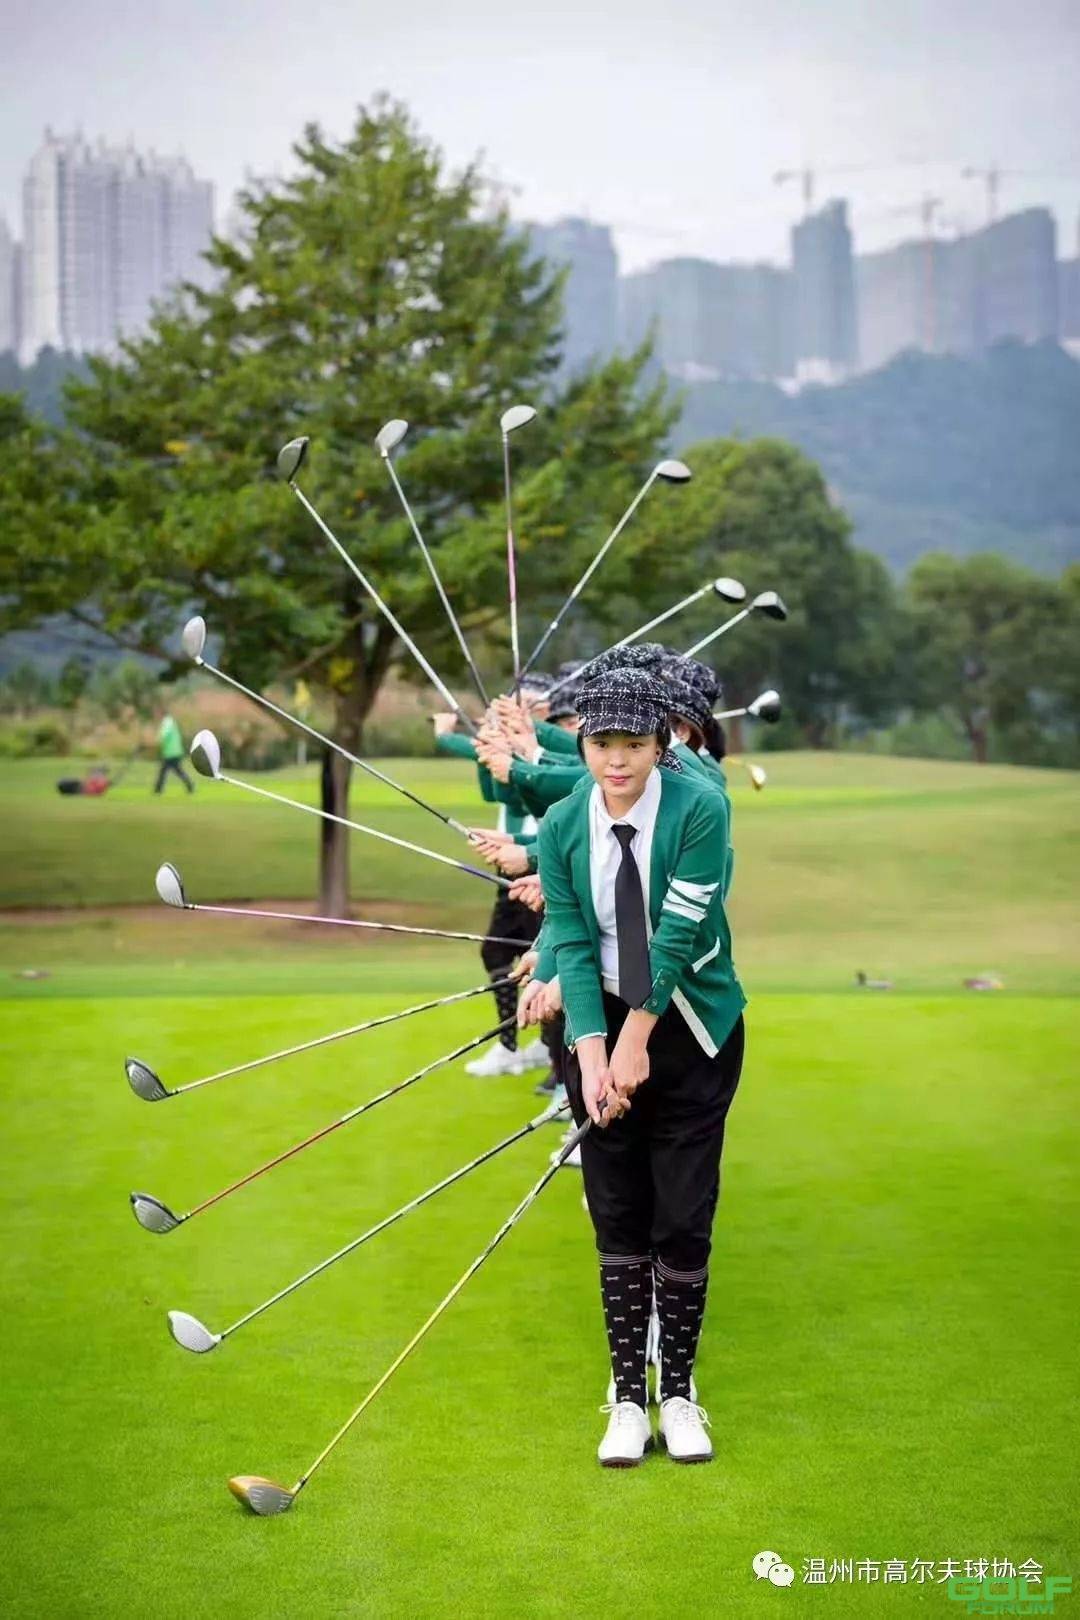 温州女子高尔夫球队开展三周年庆典活动